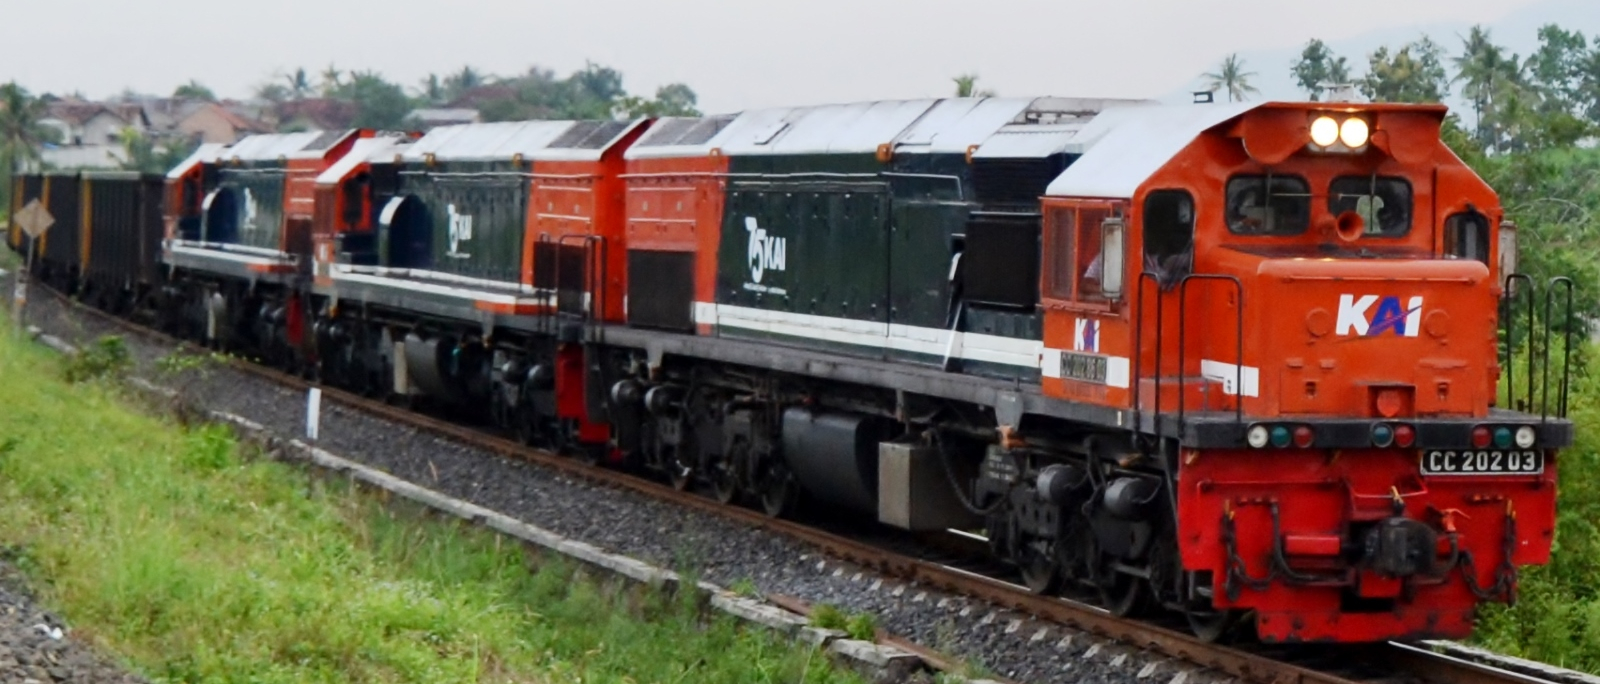 CC 203 03 of Indonesian Railways KAI in November 2020 on the Rejosari-Branti route